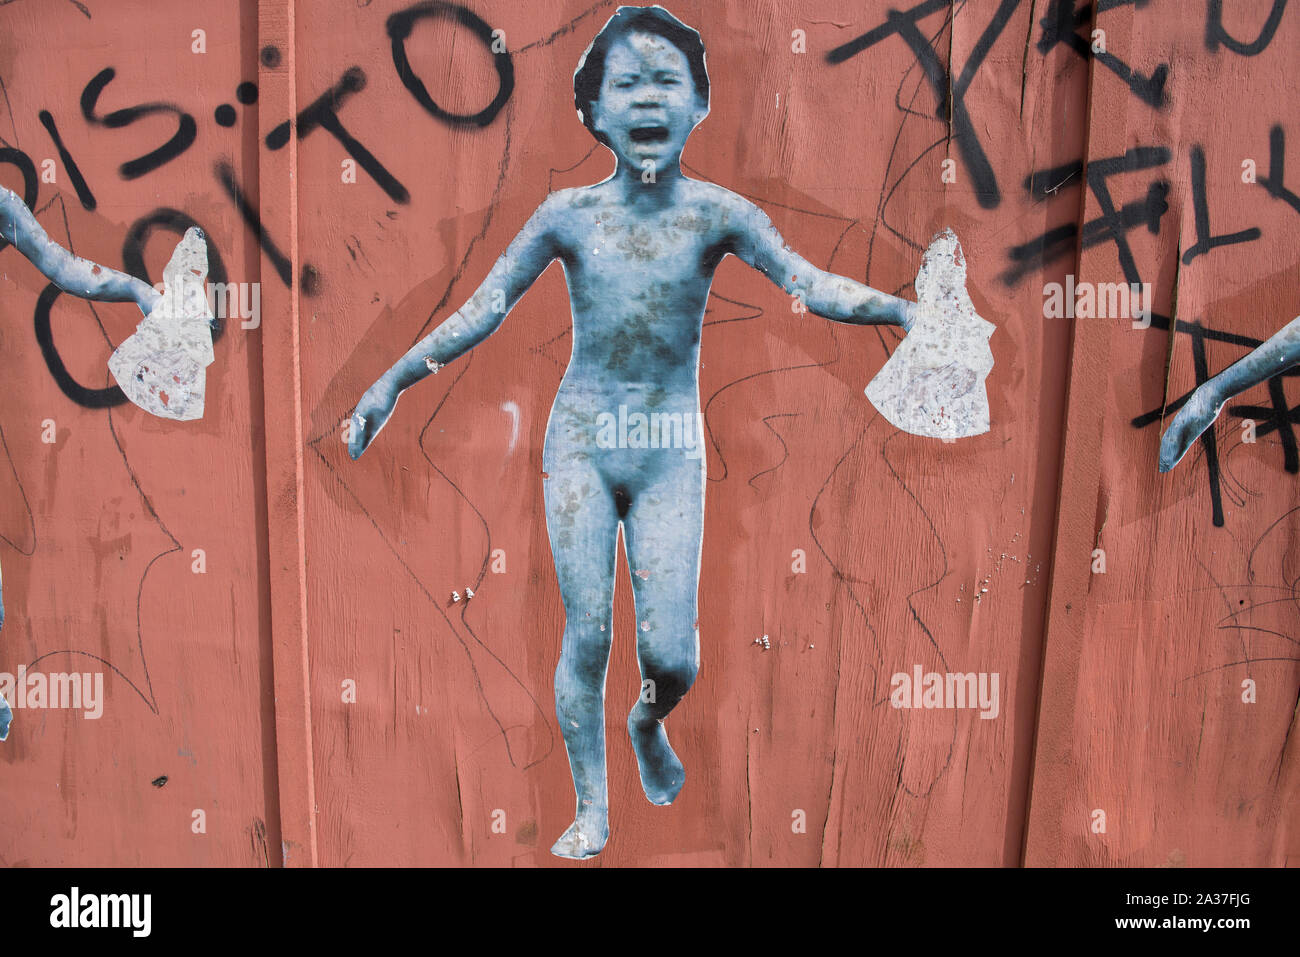 Sao Luis do Maranhao, Maranhao, Brasilien - 19. Mai 2016: Collage street art mit dem Vietnamkrieg symbolische Bild des kleinen Mädchens Kim Phuc running Stockfoto